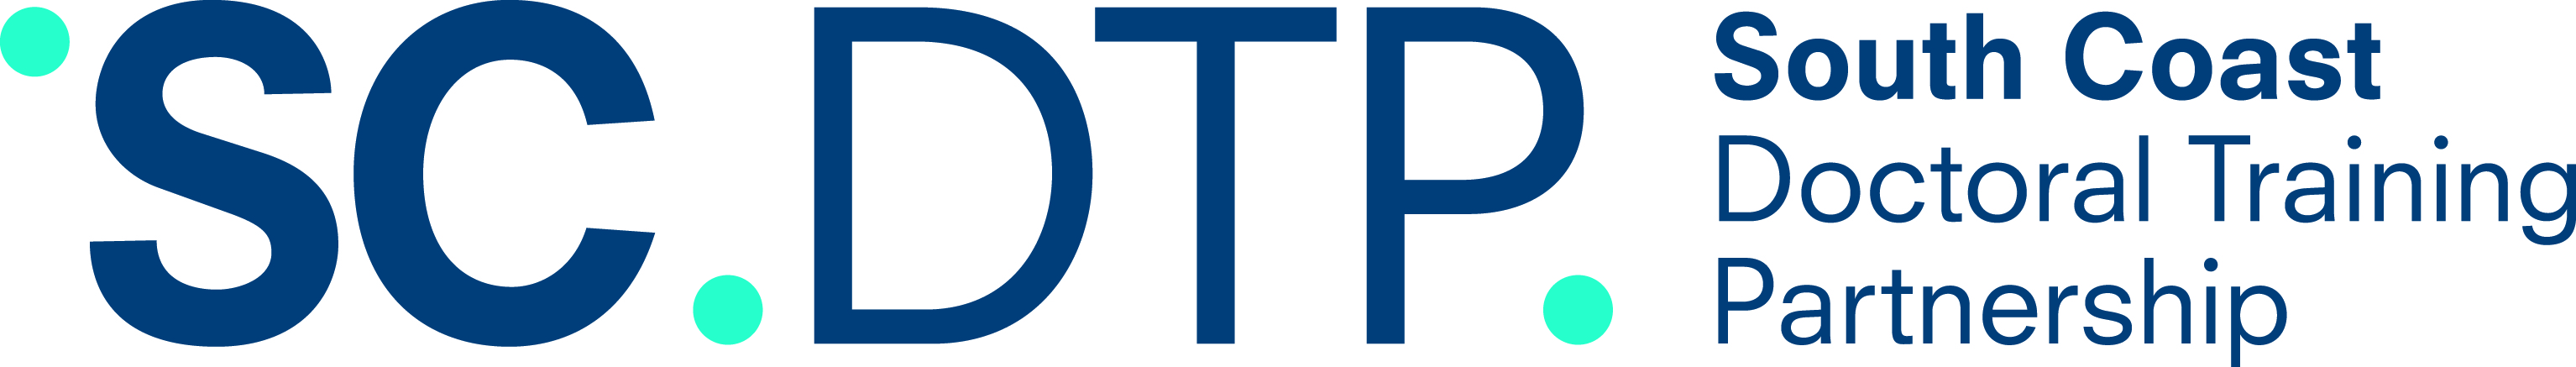 South Coast DTP Funding logo